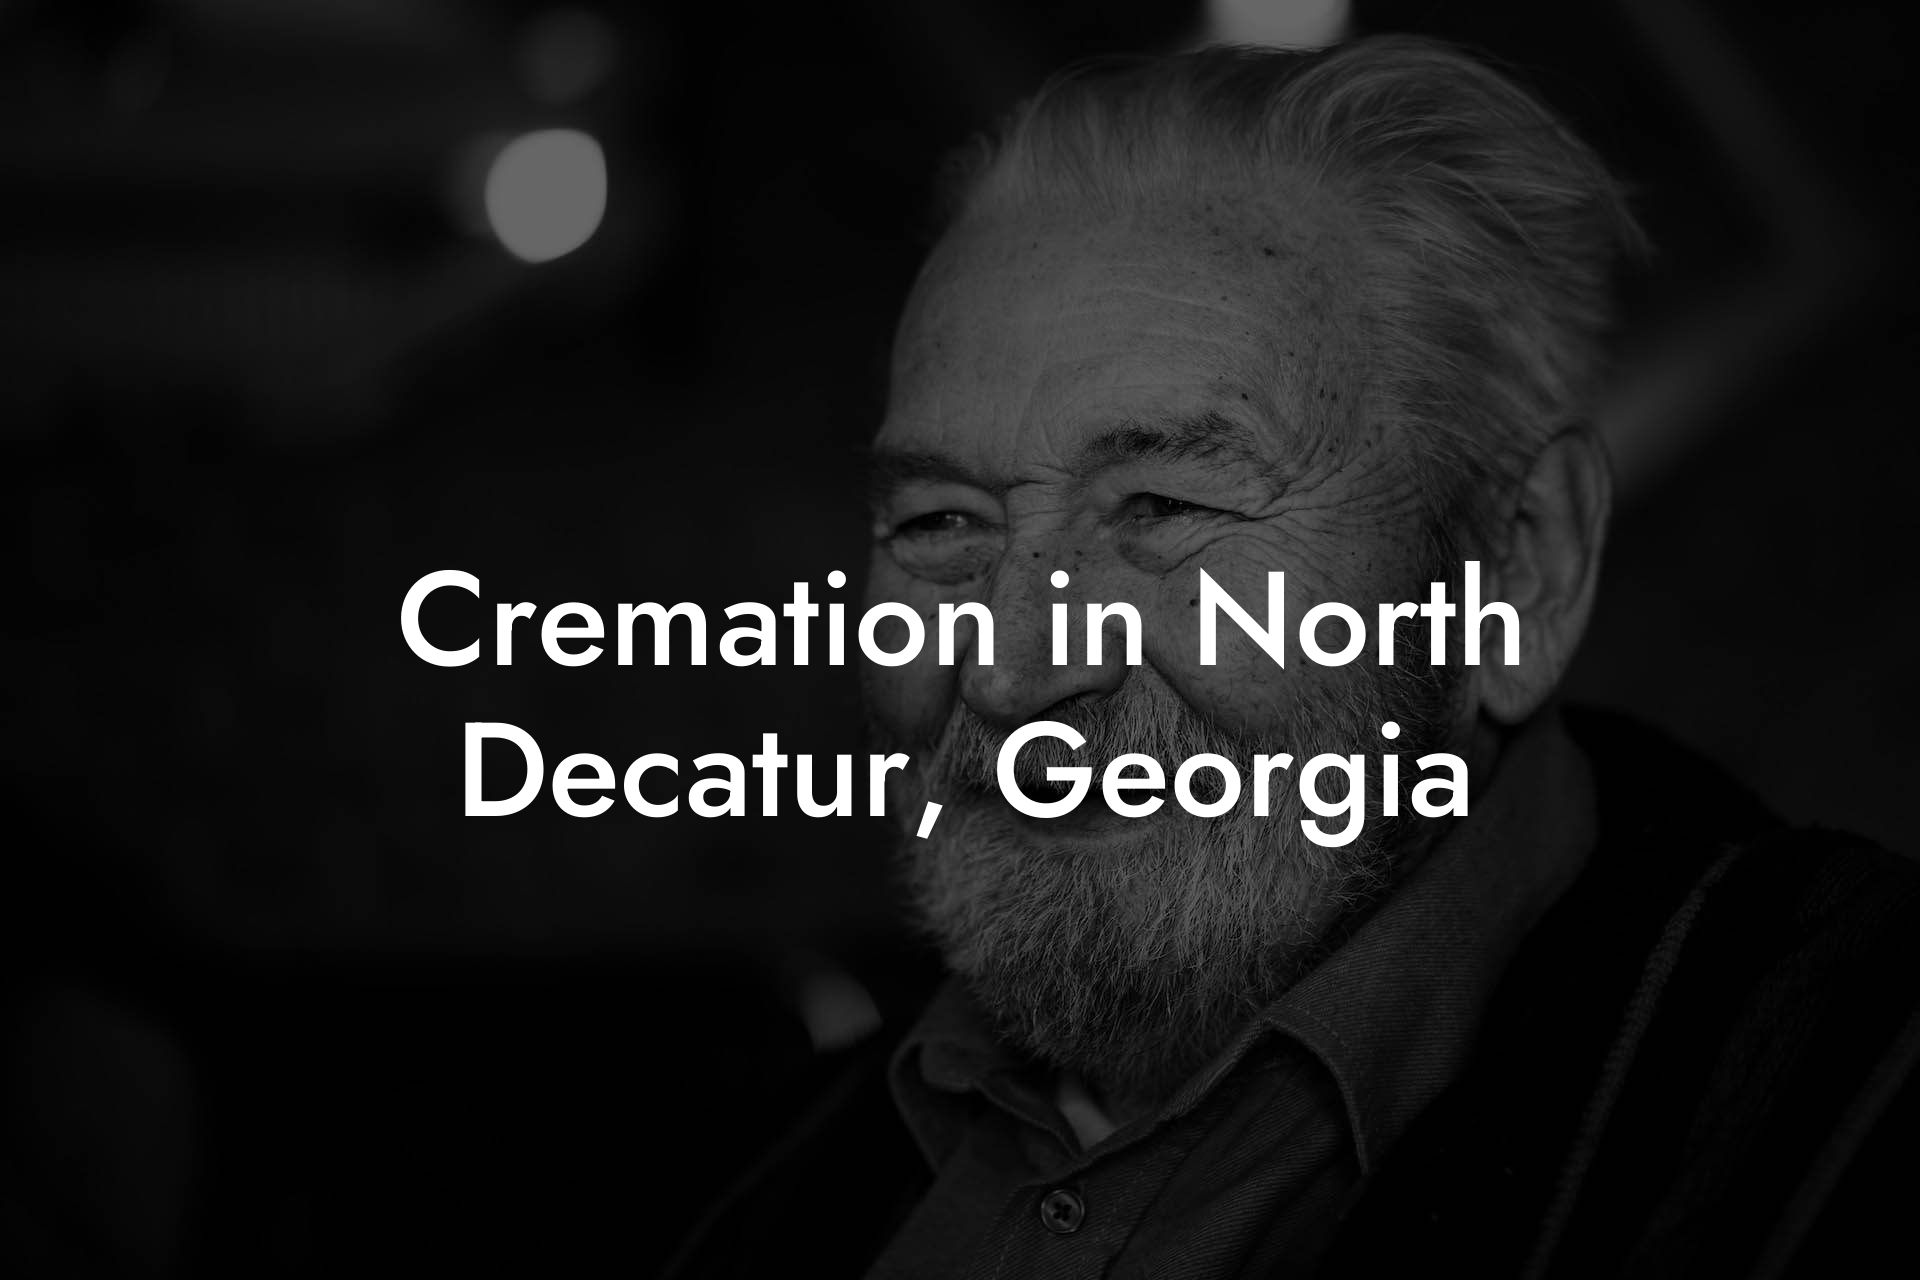 Cremation in North Decatur, Georgia